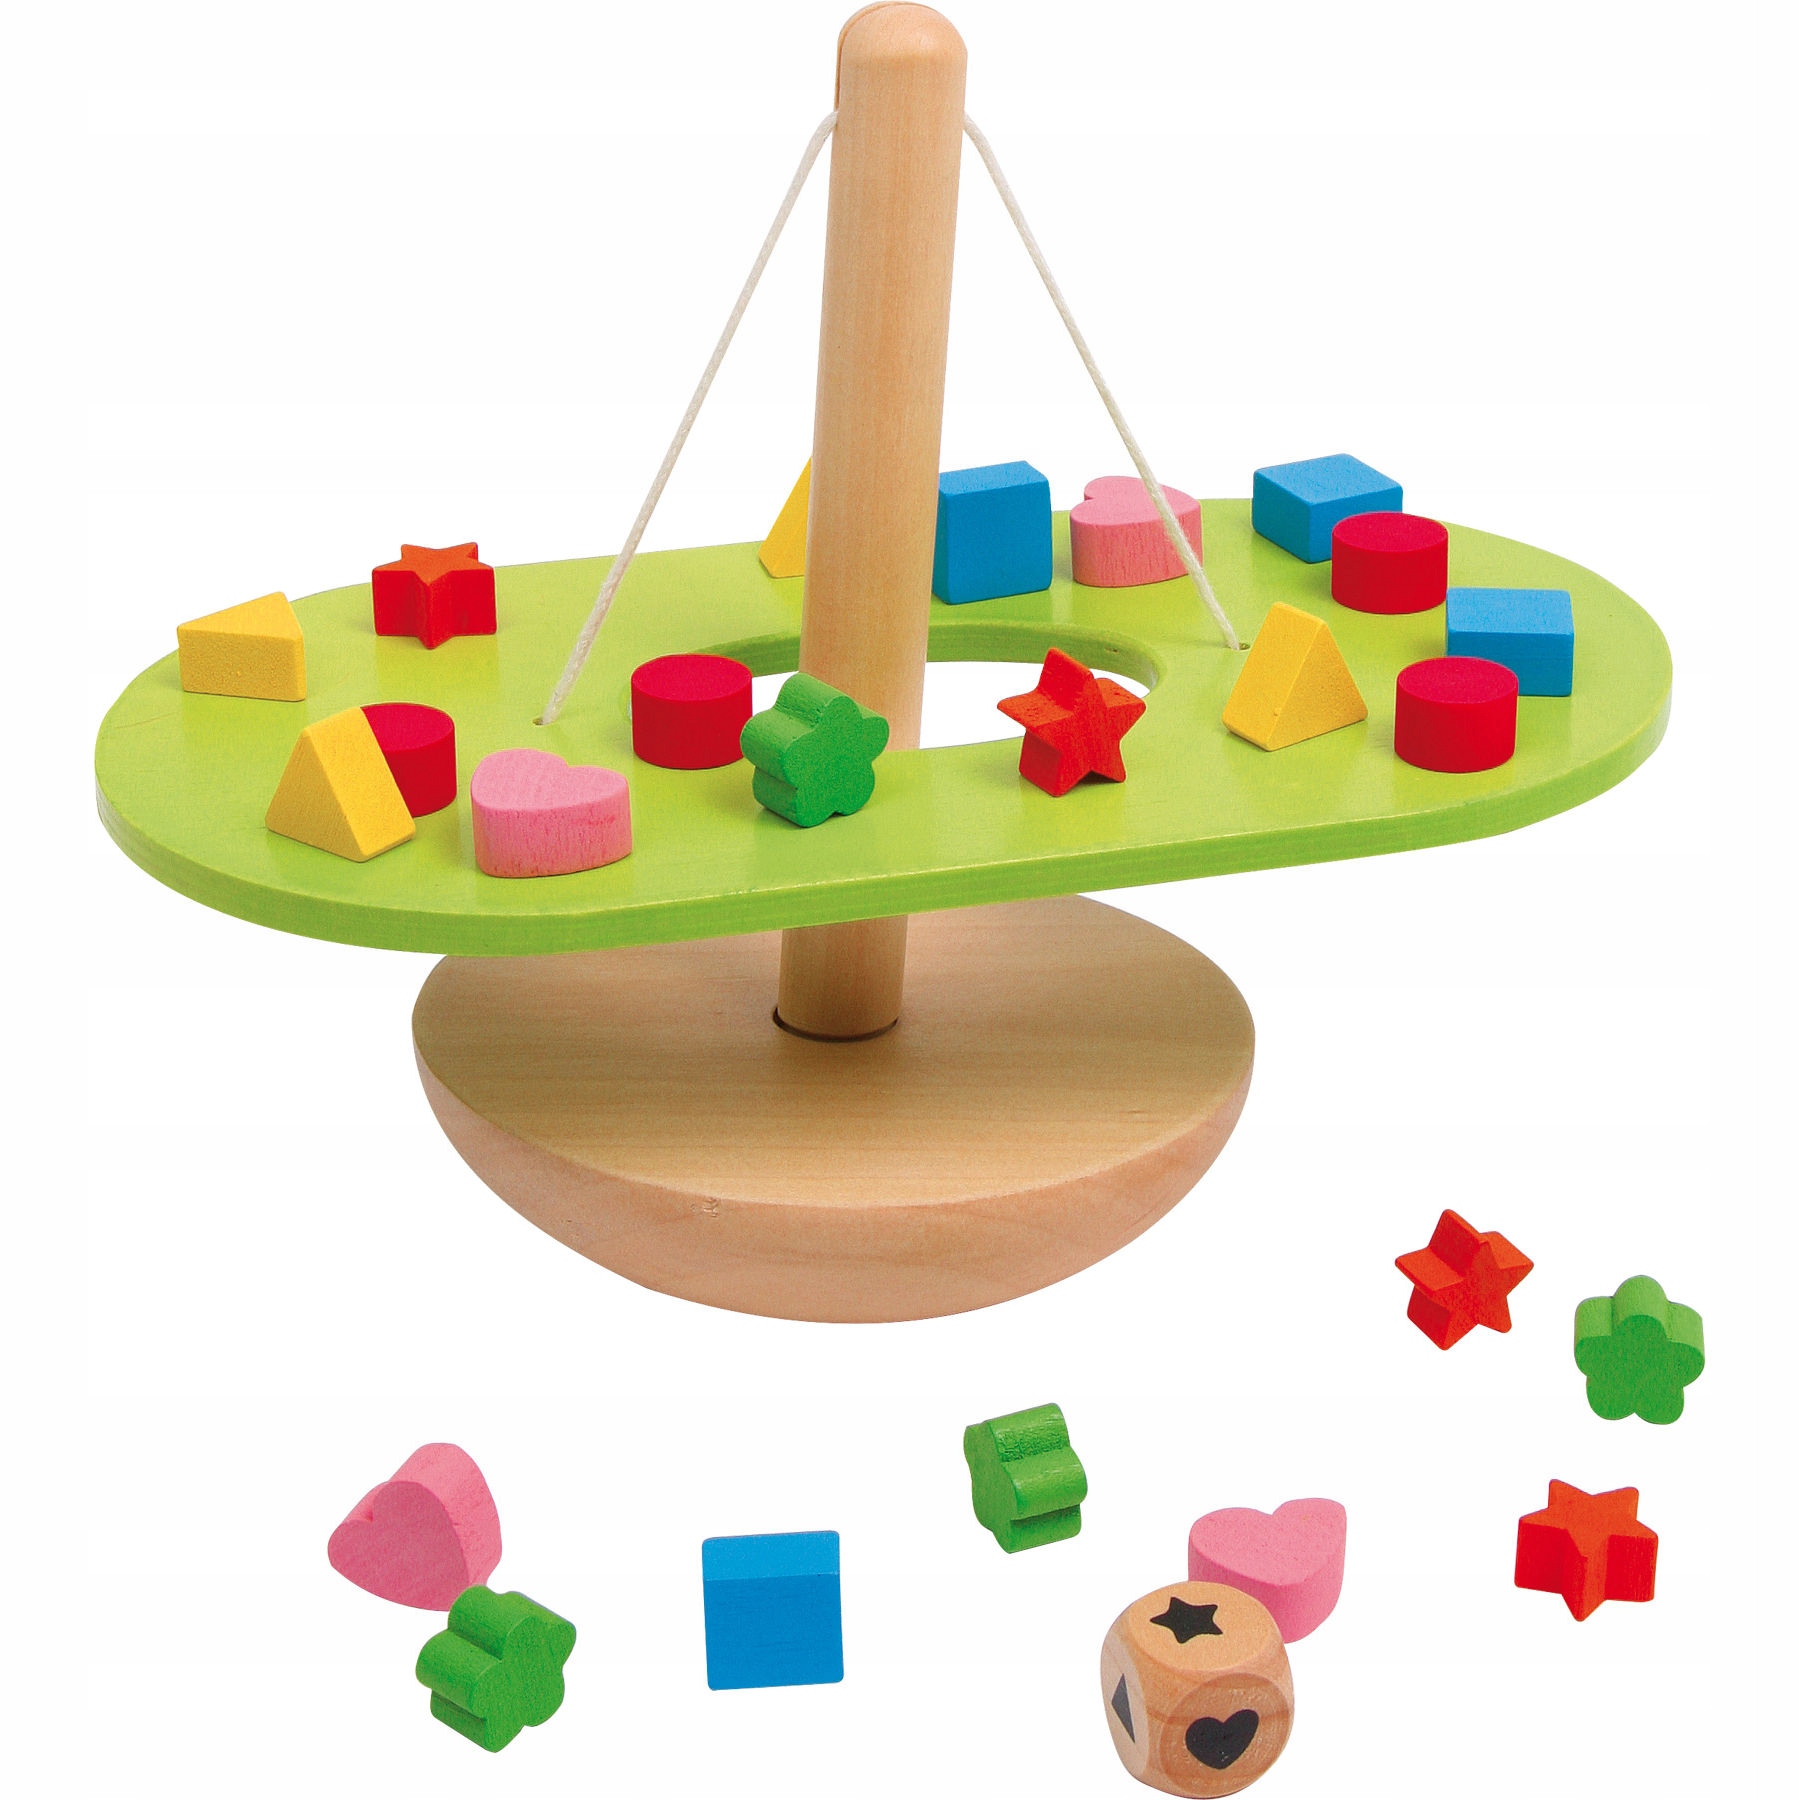 Деревянные игрушки игра. Деревянные игрушки для детей. Игрушка балансир. Деревянные игрушки для детей развивающие. Игрушка балансир деревянная.